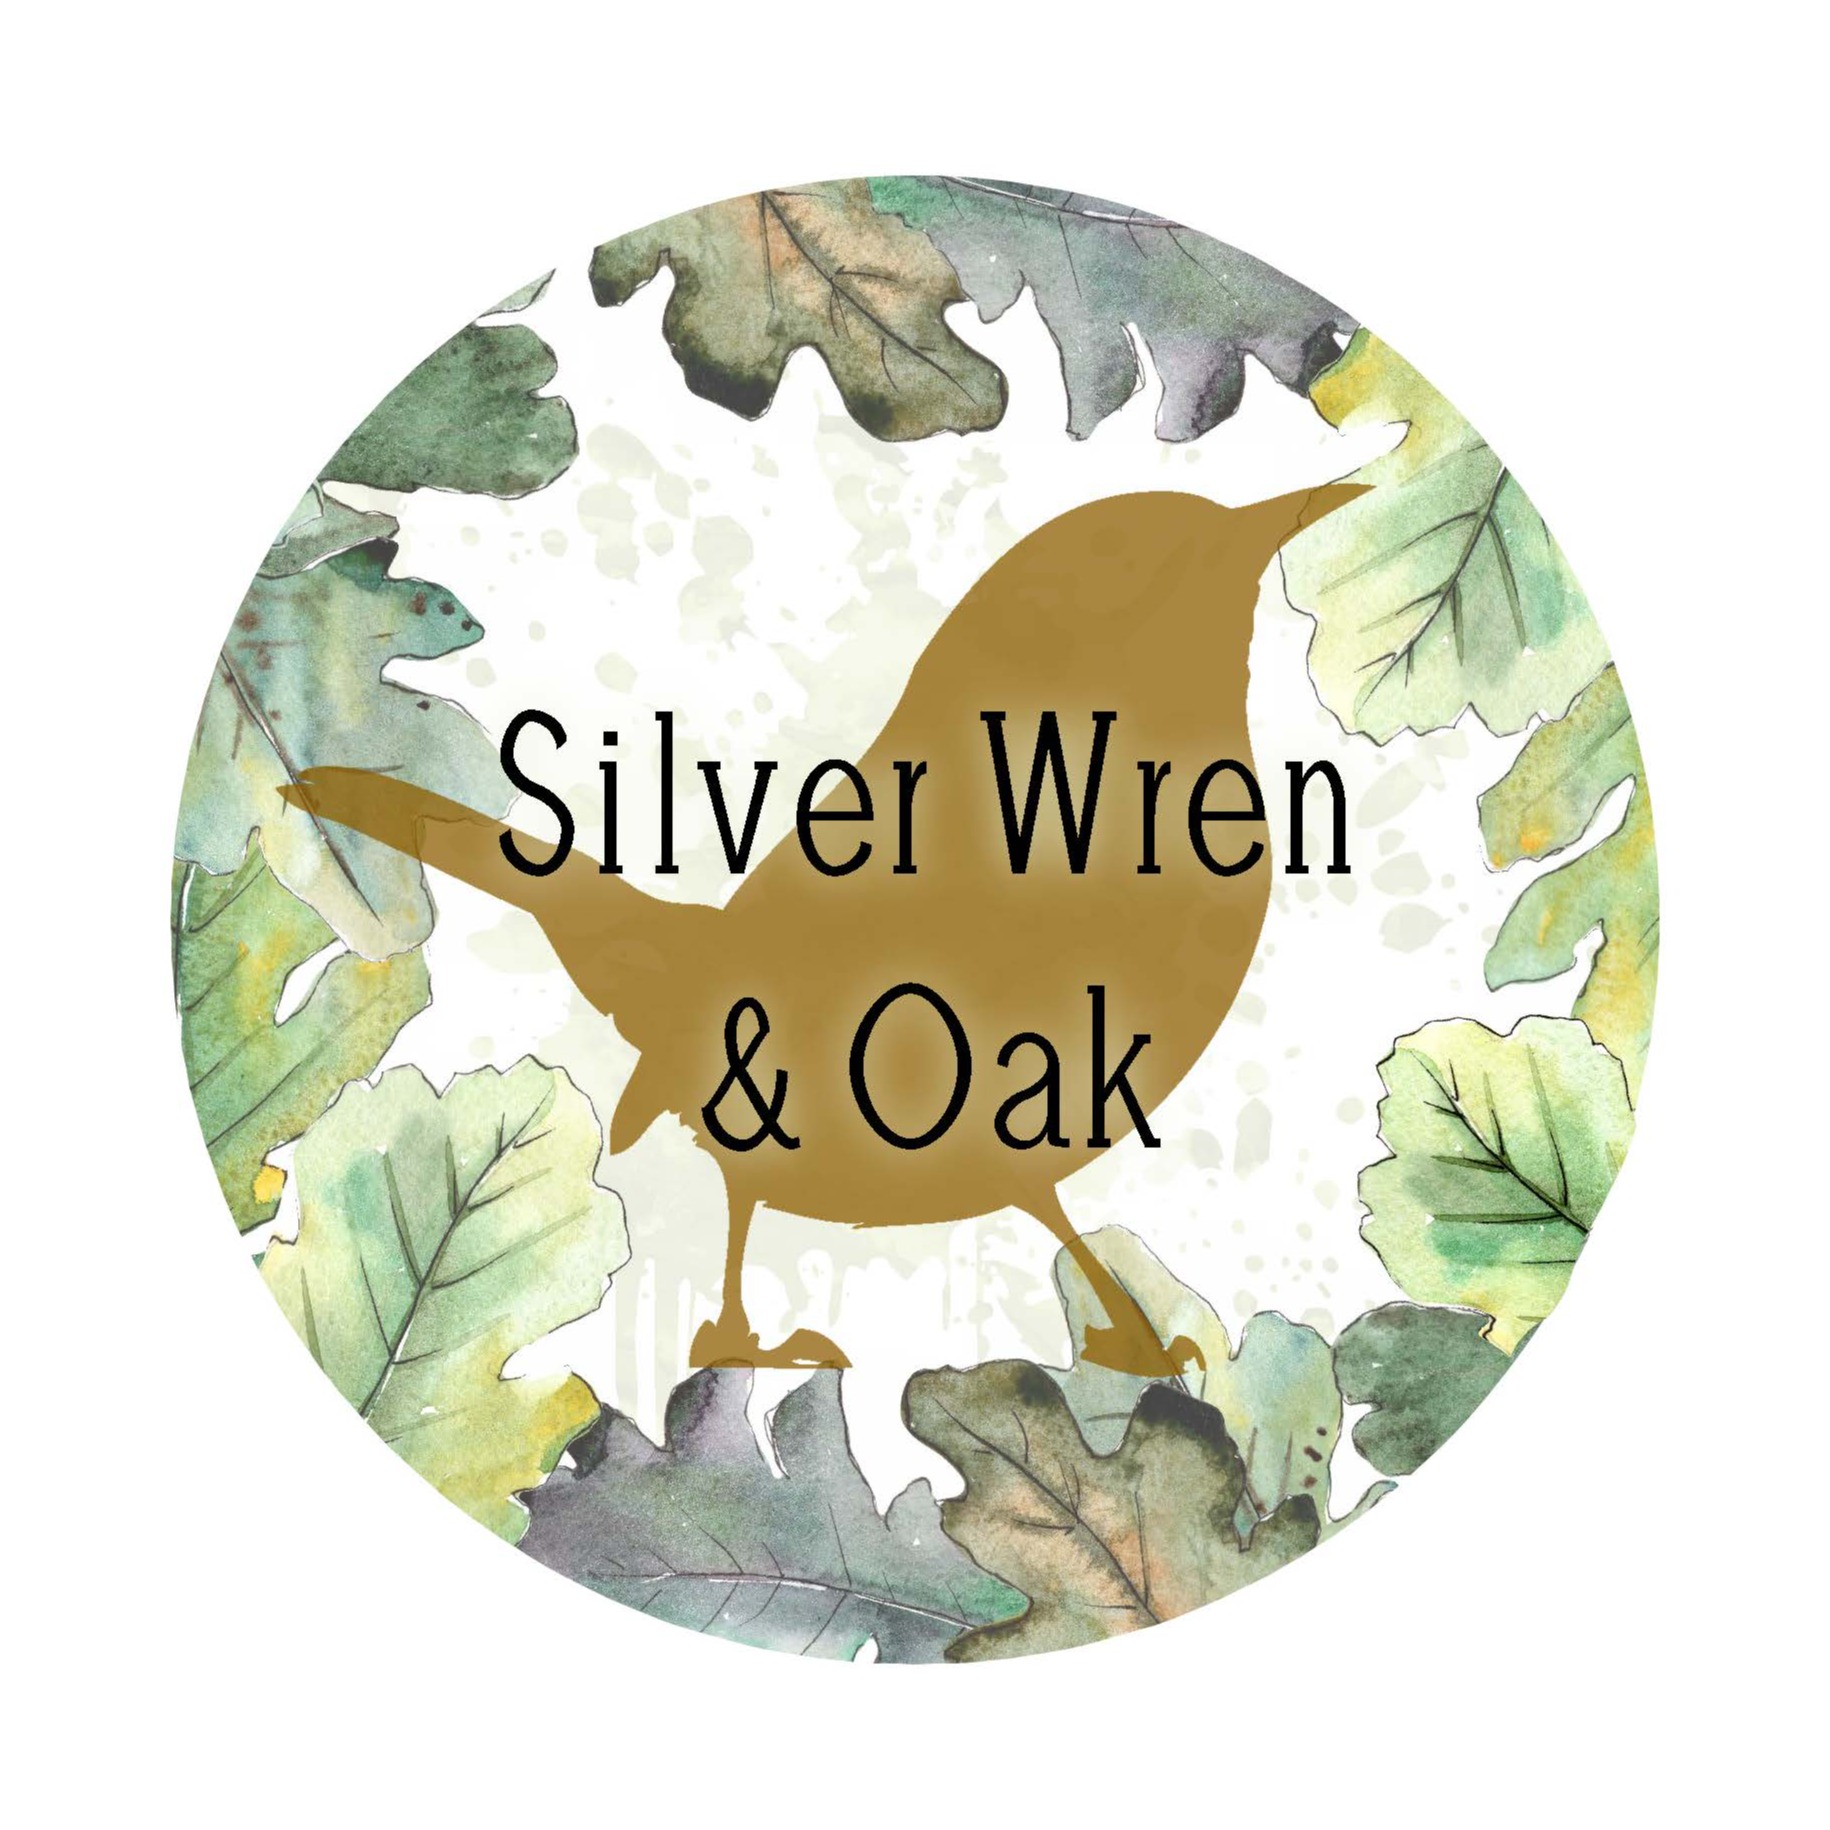 Silver Wren and Oak